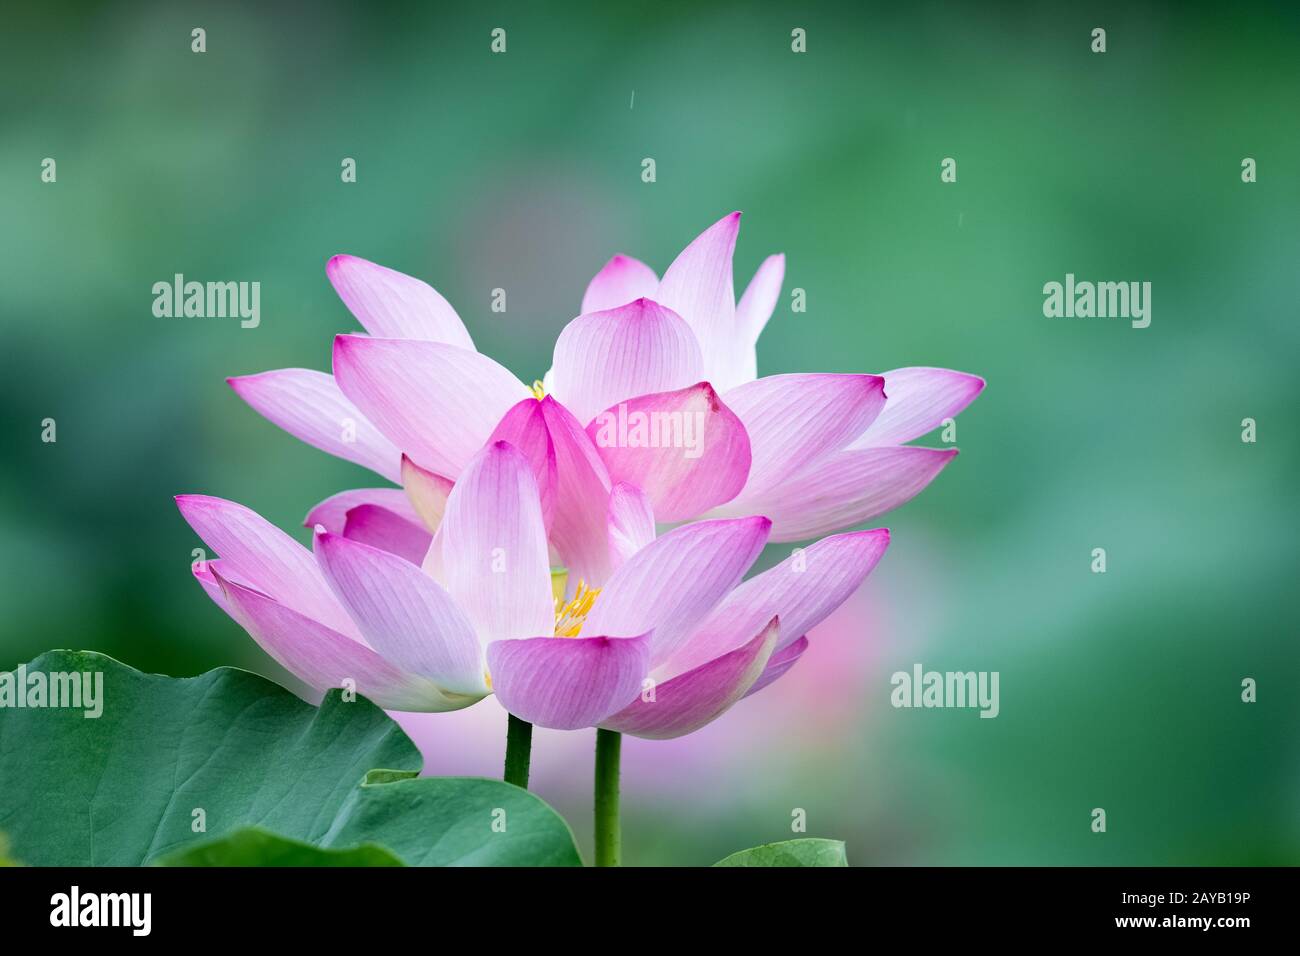 lotus flower blooms Stock Photo